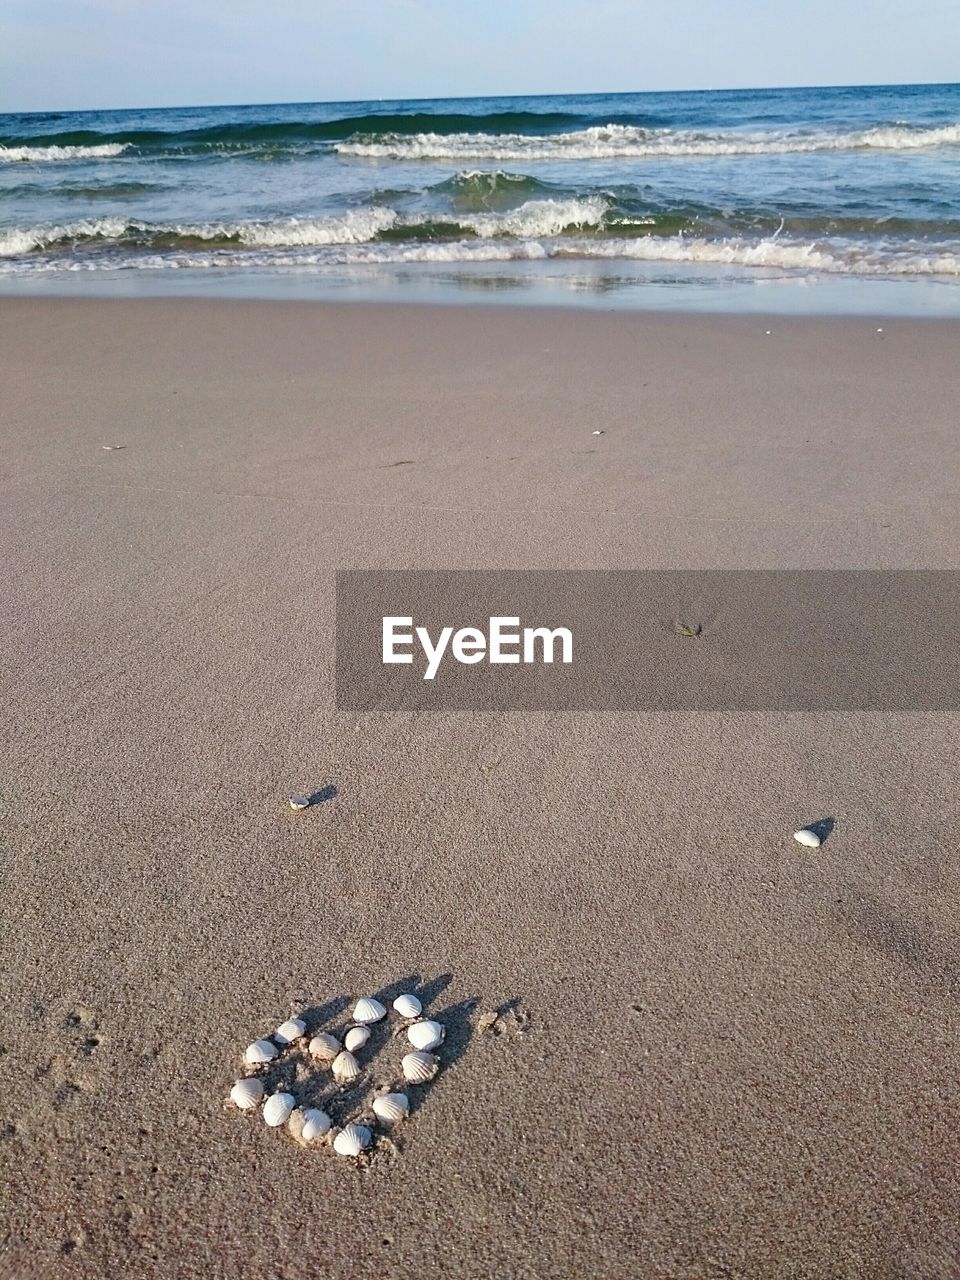 Seashells arranged in heart shape on beach